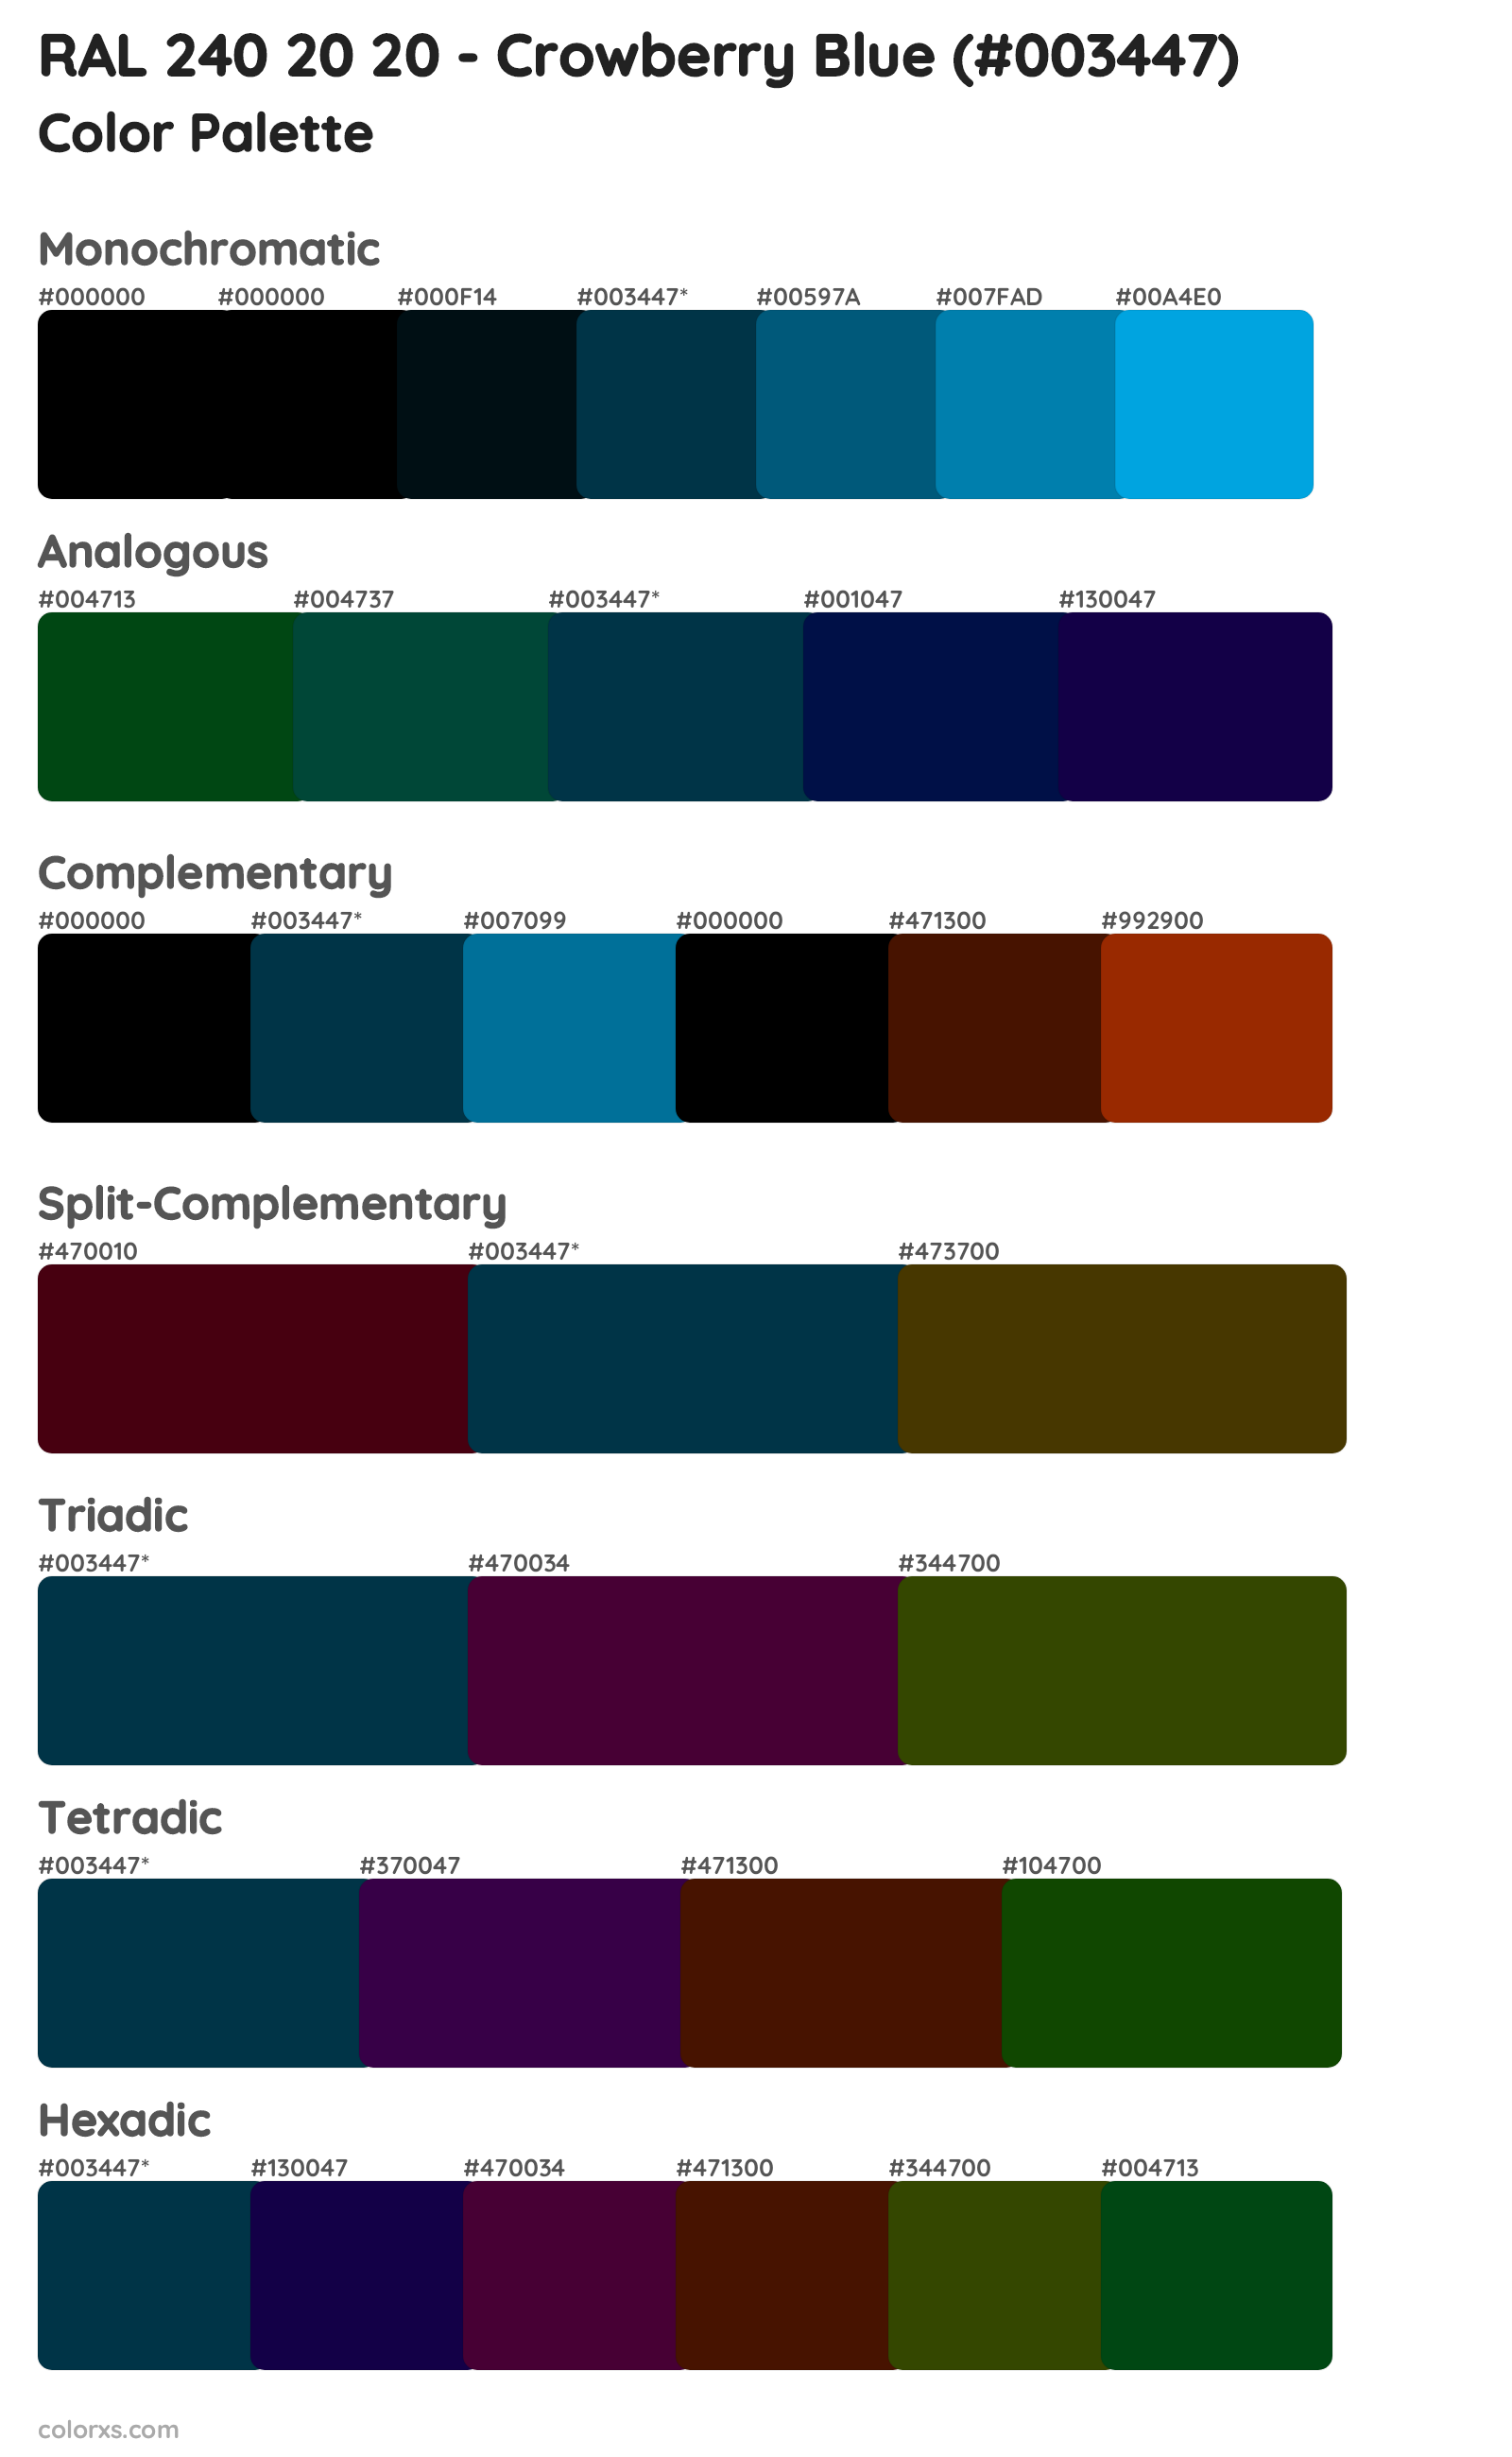 RAL 240 20 20 - Crowberry Blue Color Scheme Palettes